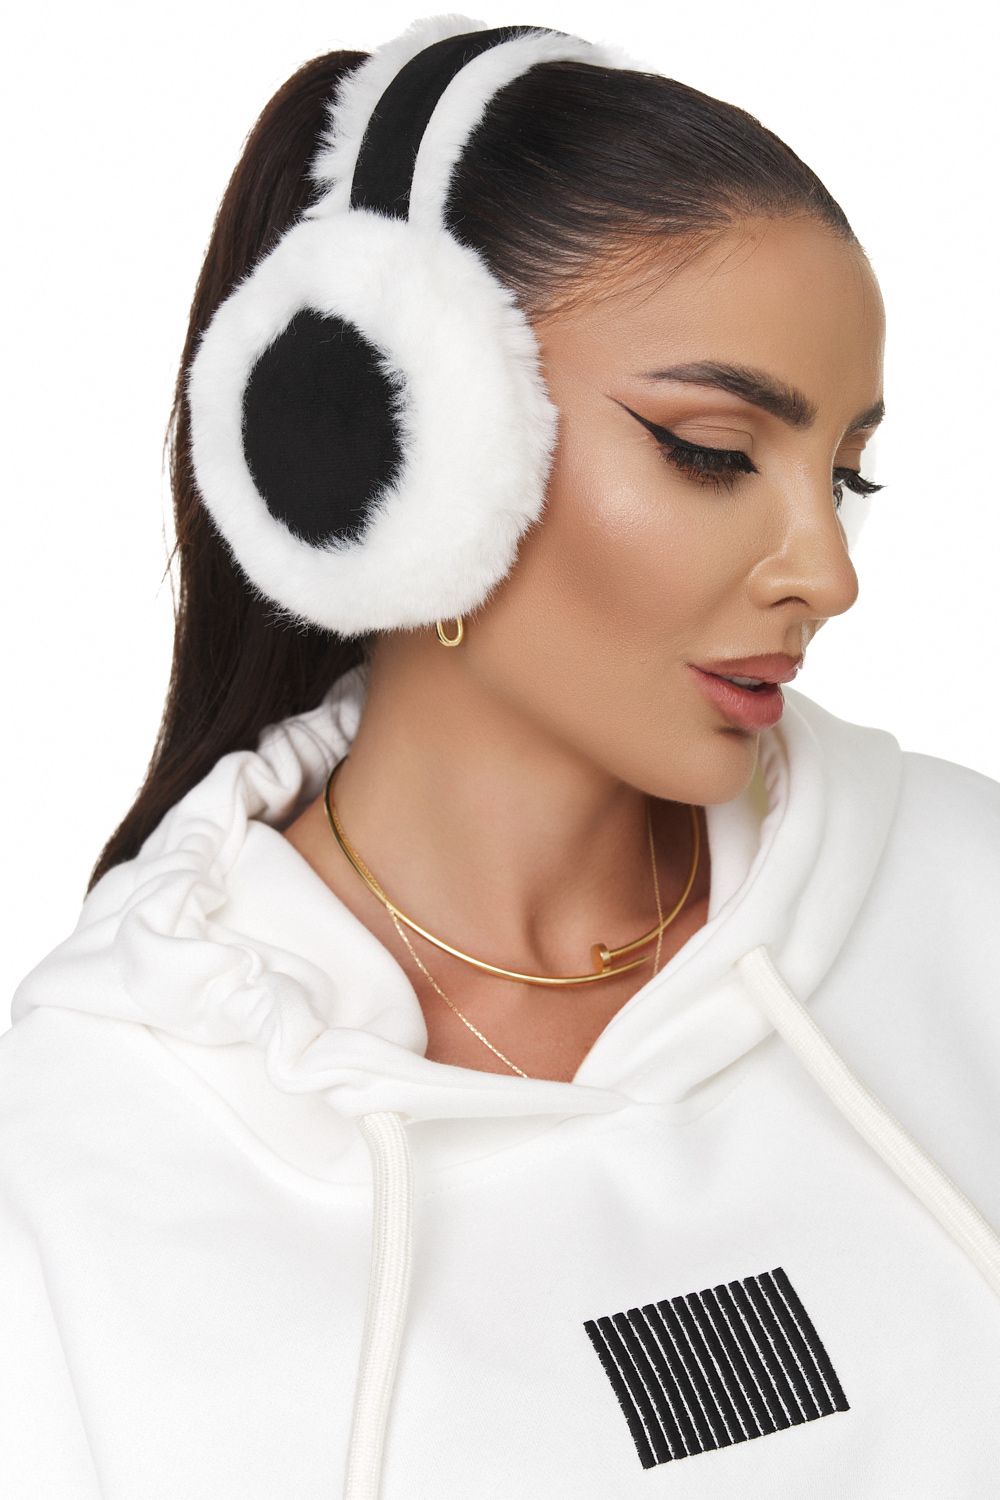 Segrila Bogas fekete-fehér fülvédő fülhallgató